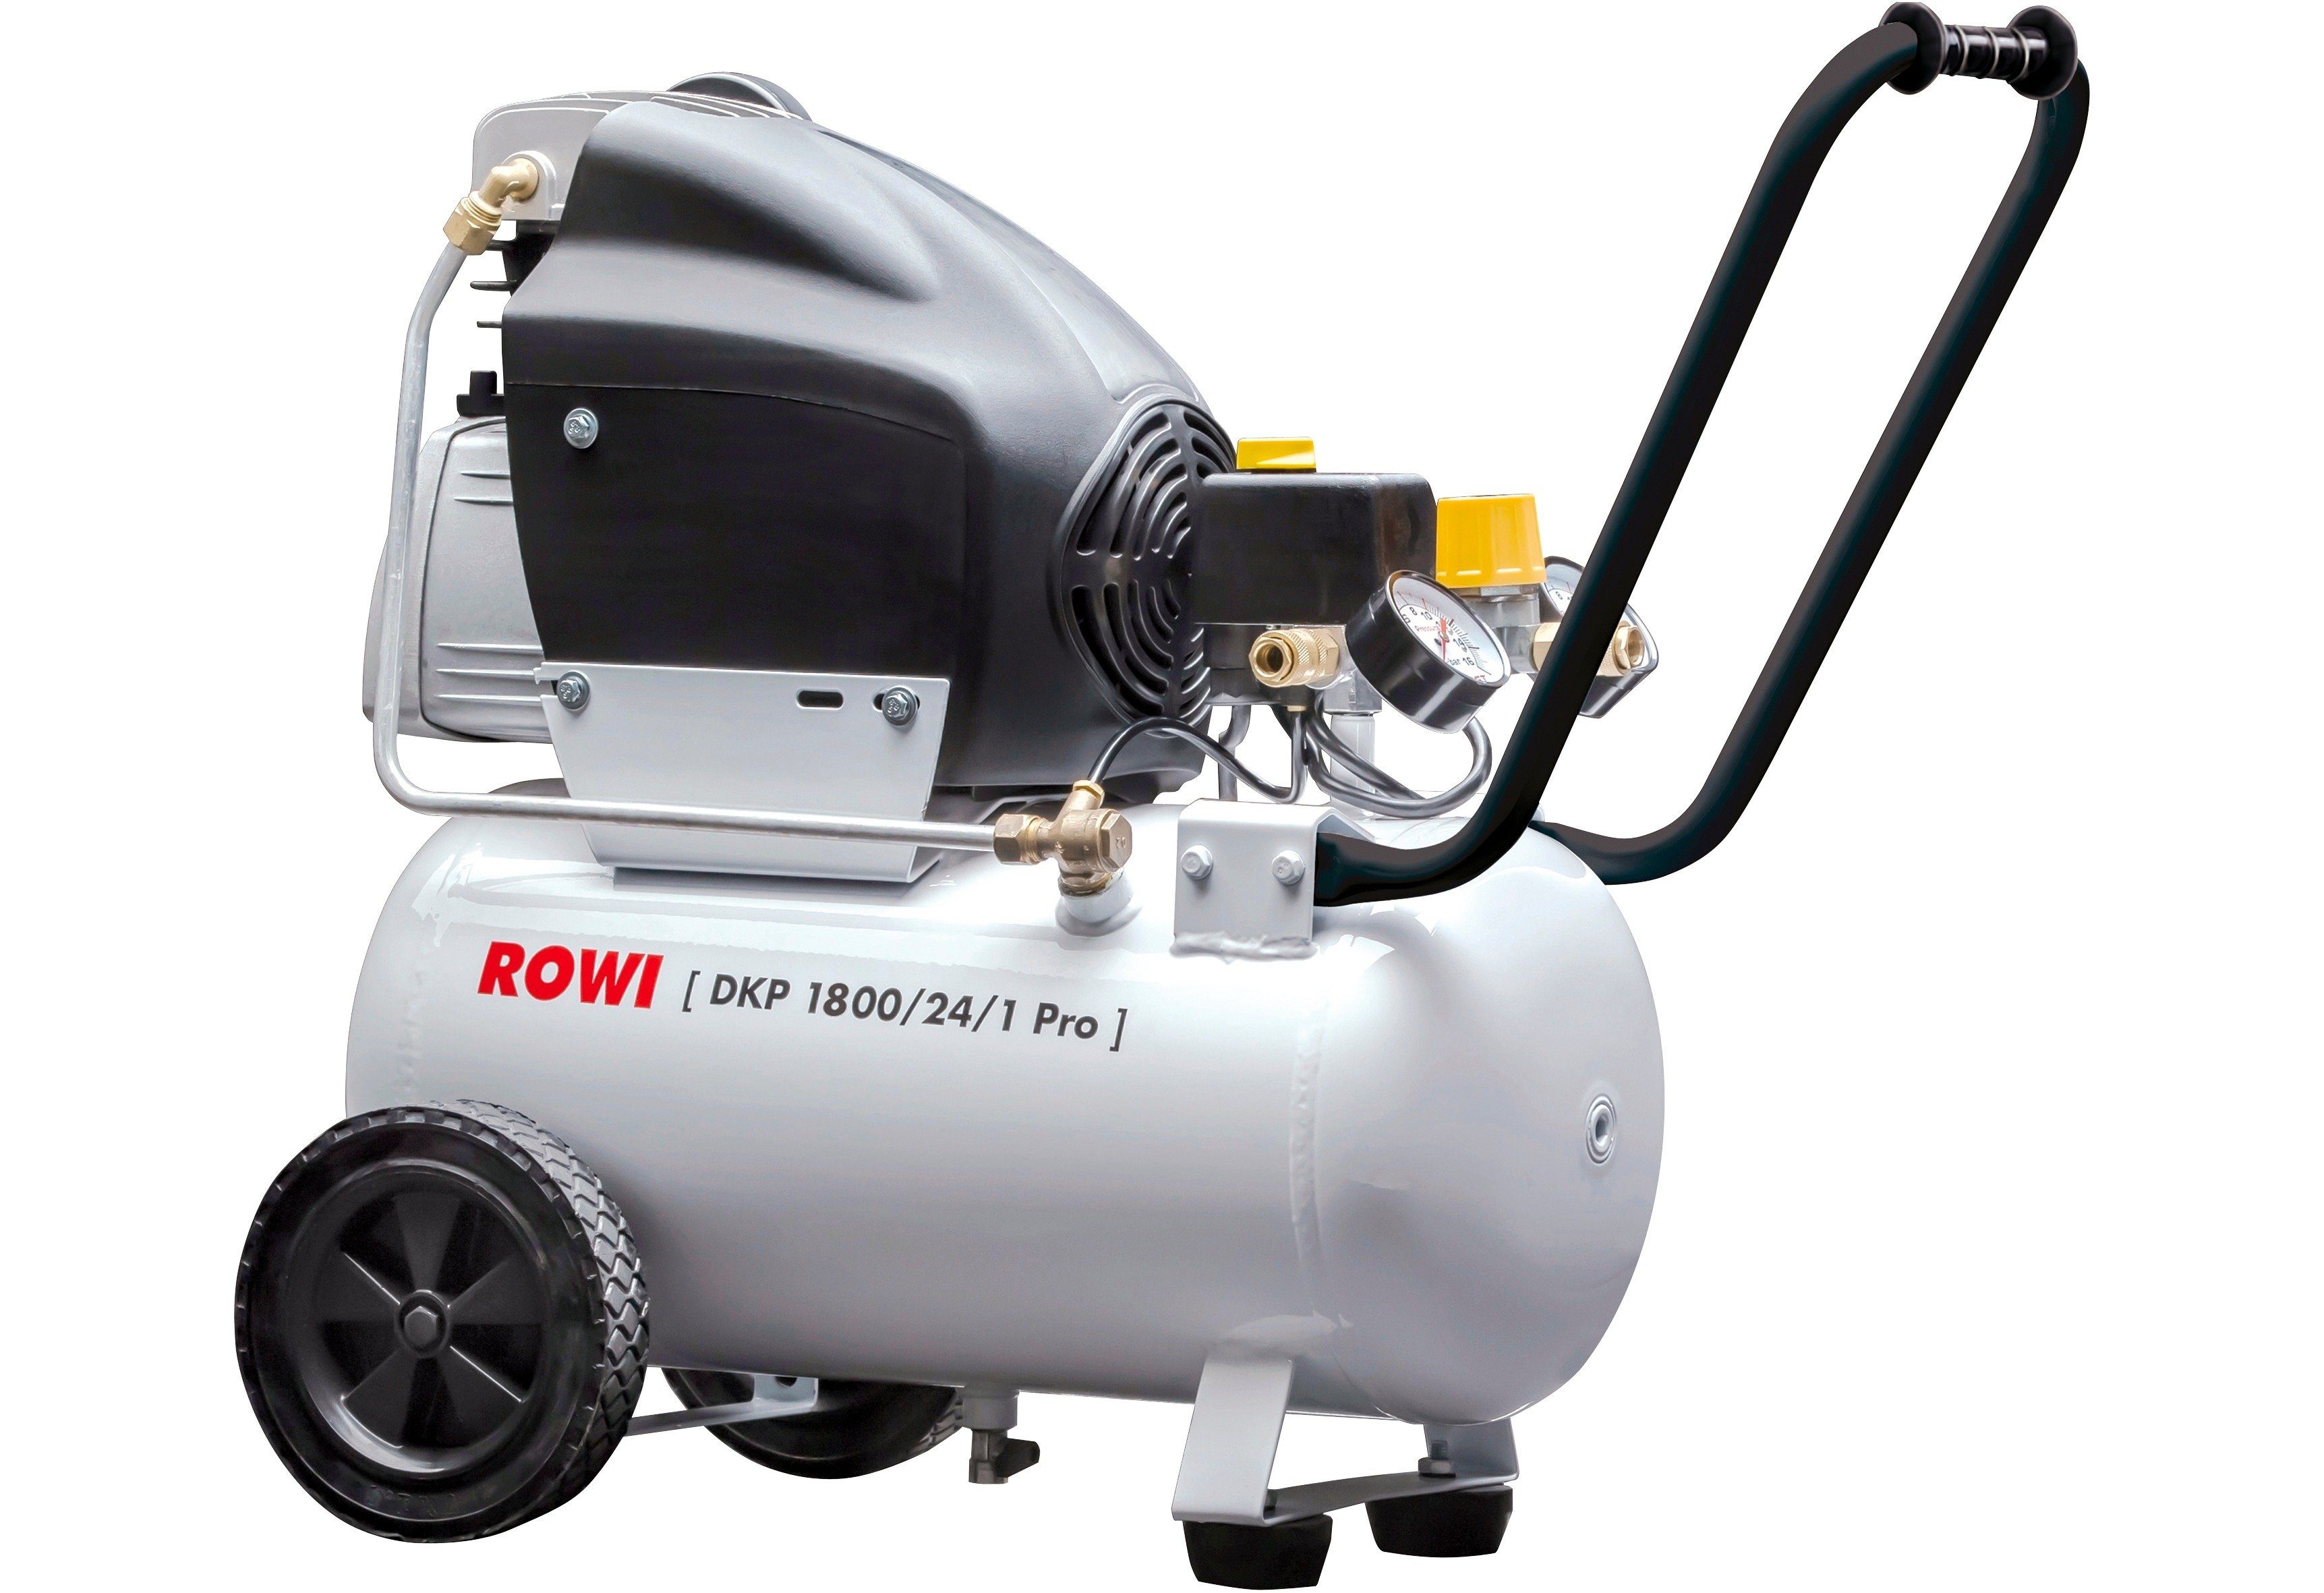 ROWI Kompressor DKP W, 1800/24/1 bar, 24 l Pro, max. 1800 10